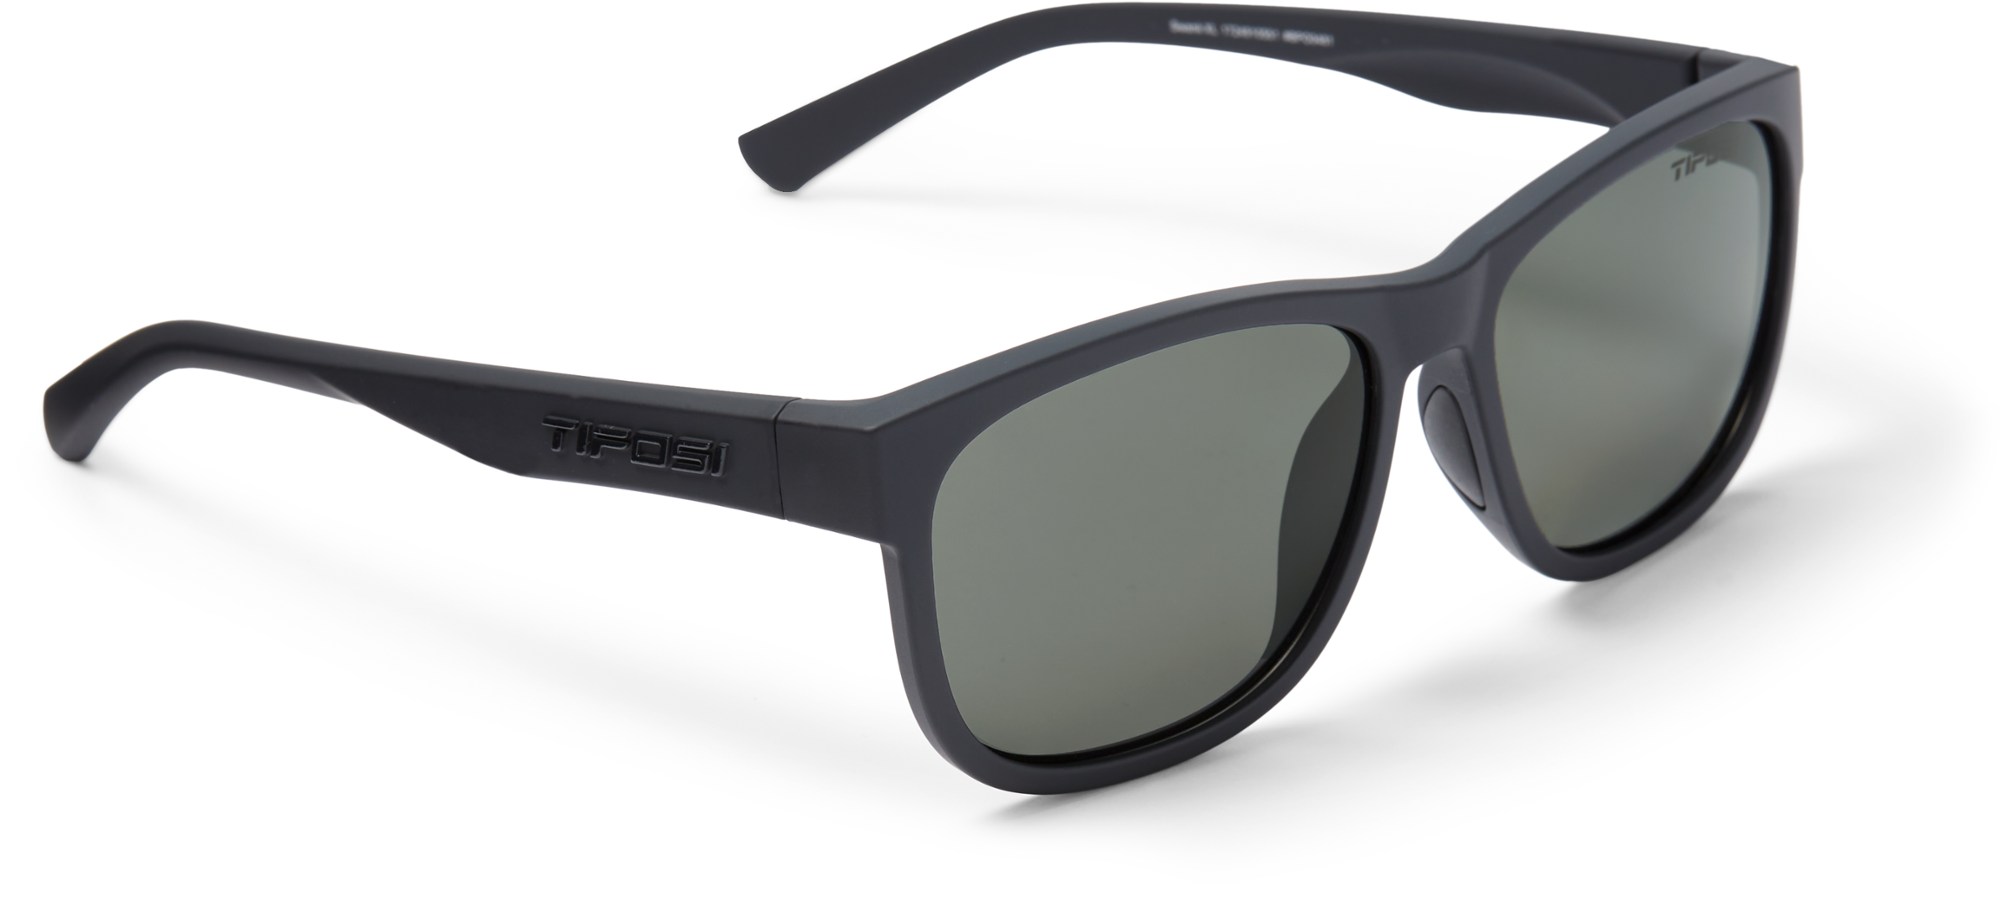 Поляризованные солнцезащитные очки Swank XL Tifosi, черный